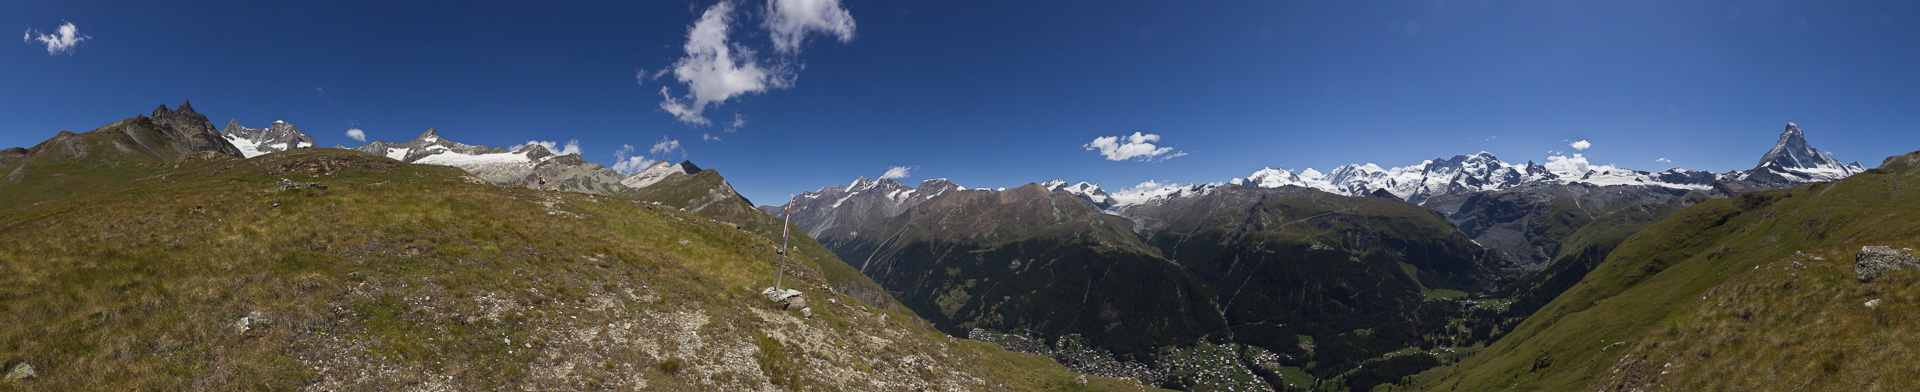 Schönes Panorama mit Tiefblick auf Zermatt und seinen umgebenden Bergen.